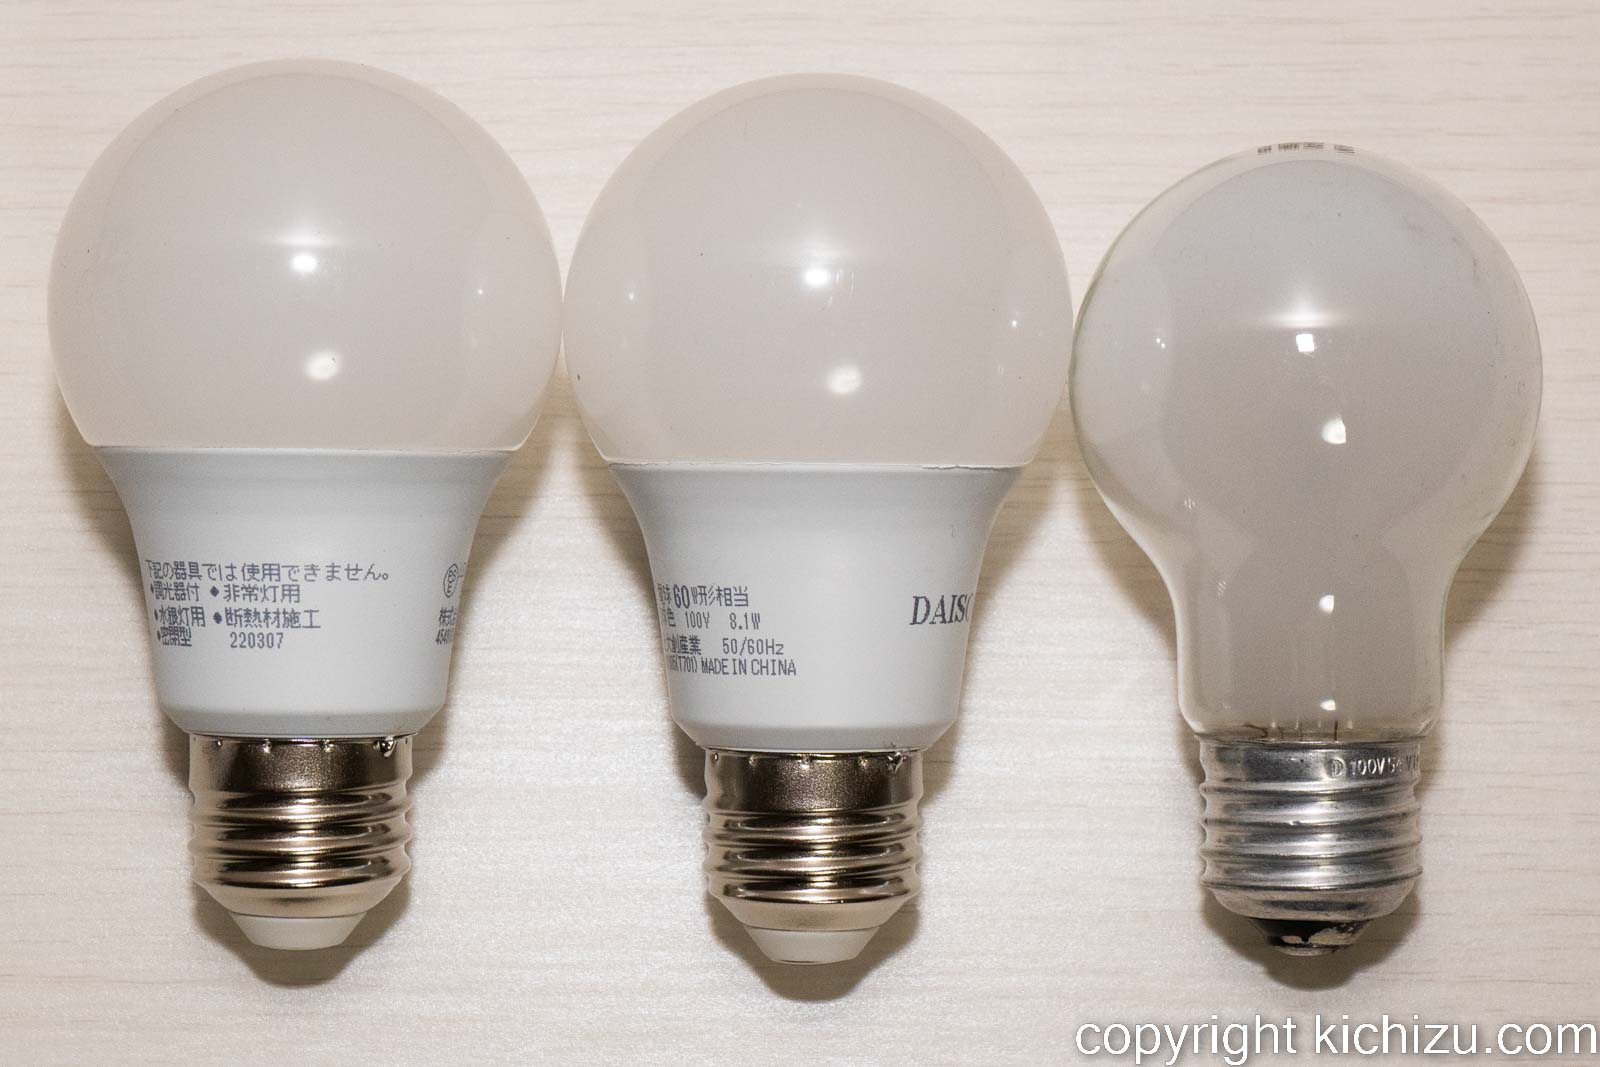 60 W LED 電球とシリカ・白熱電球との比較